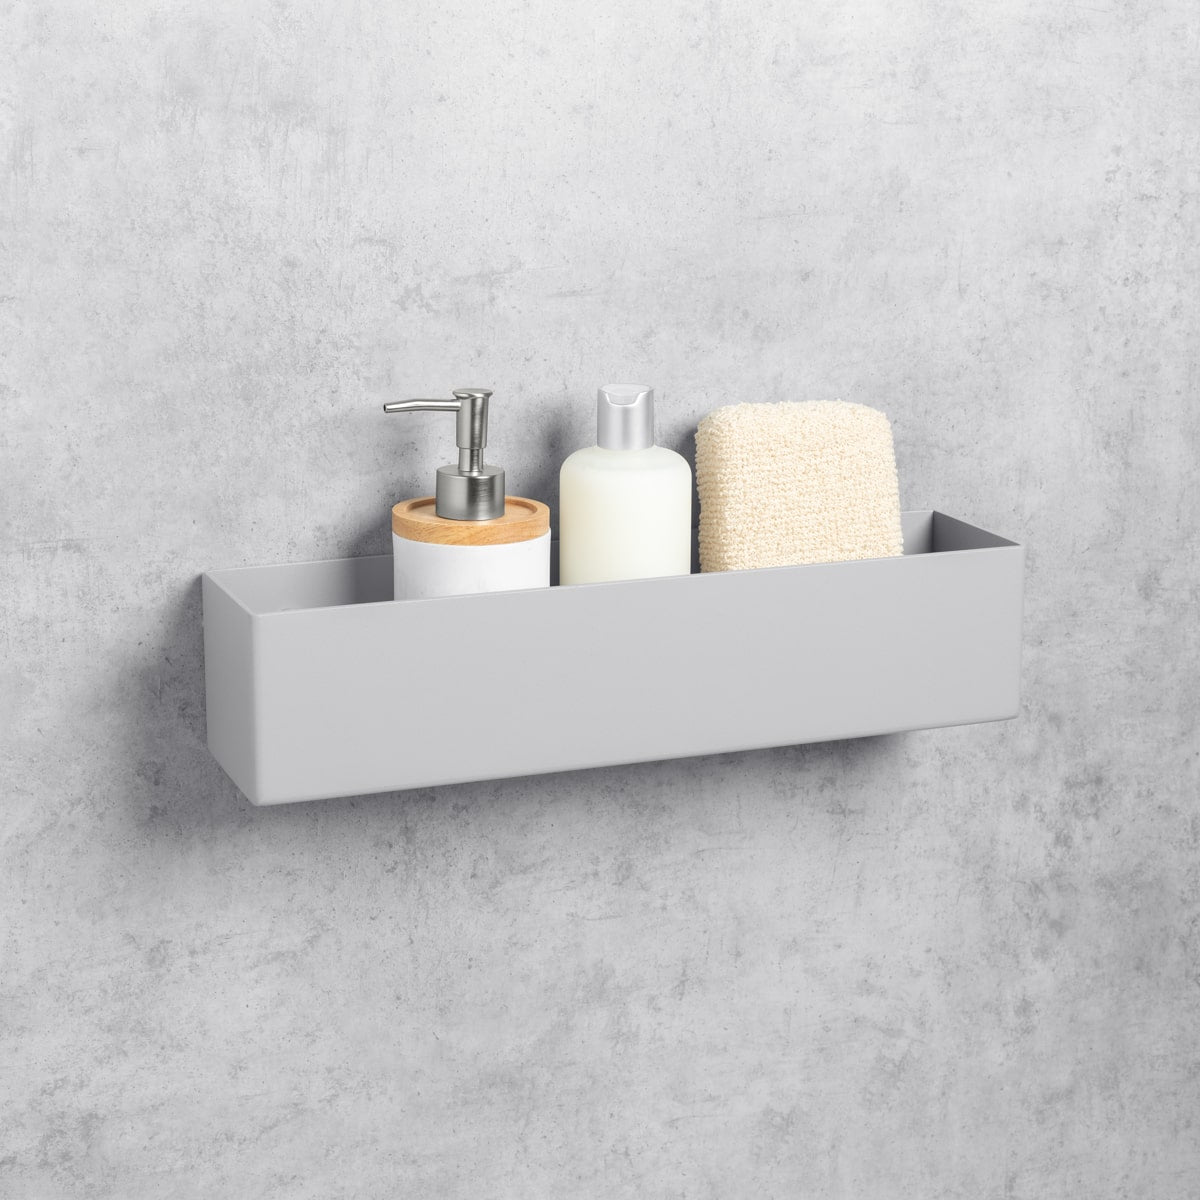 grey bathroom shelf-organizer basket